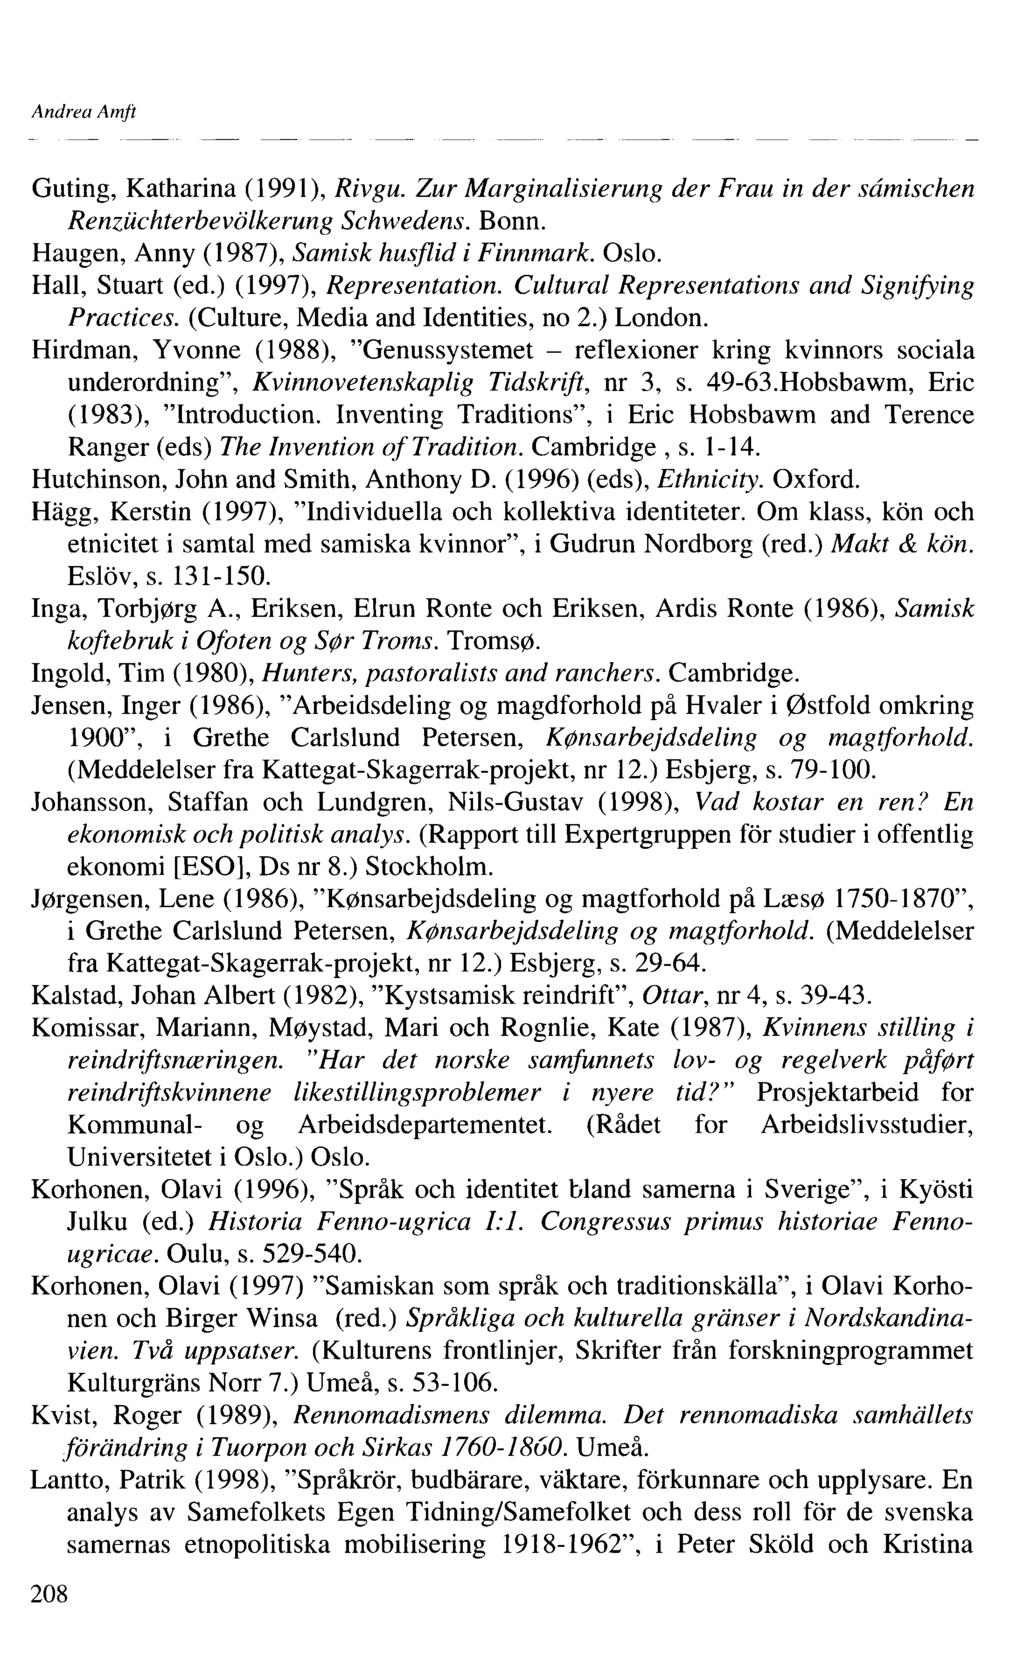 Andrea Amft Guting, Katharina (99), Rivgu. Zur Marginalisierung der Frau in der sâmischen Renzüchterbevölkerung Schwedens. Bonn. Haugen, Anny (987), Samisk husflid i Finnmark. Oslo. Hall, Stuart (ed.